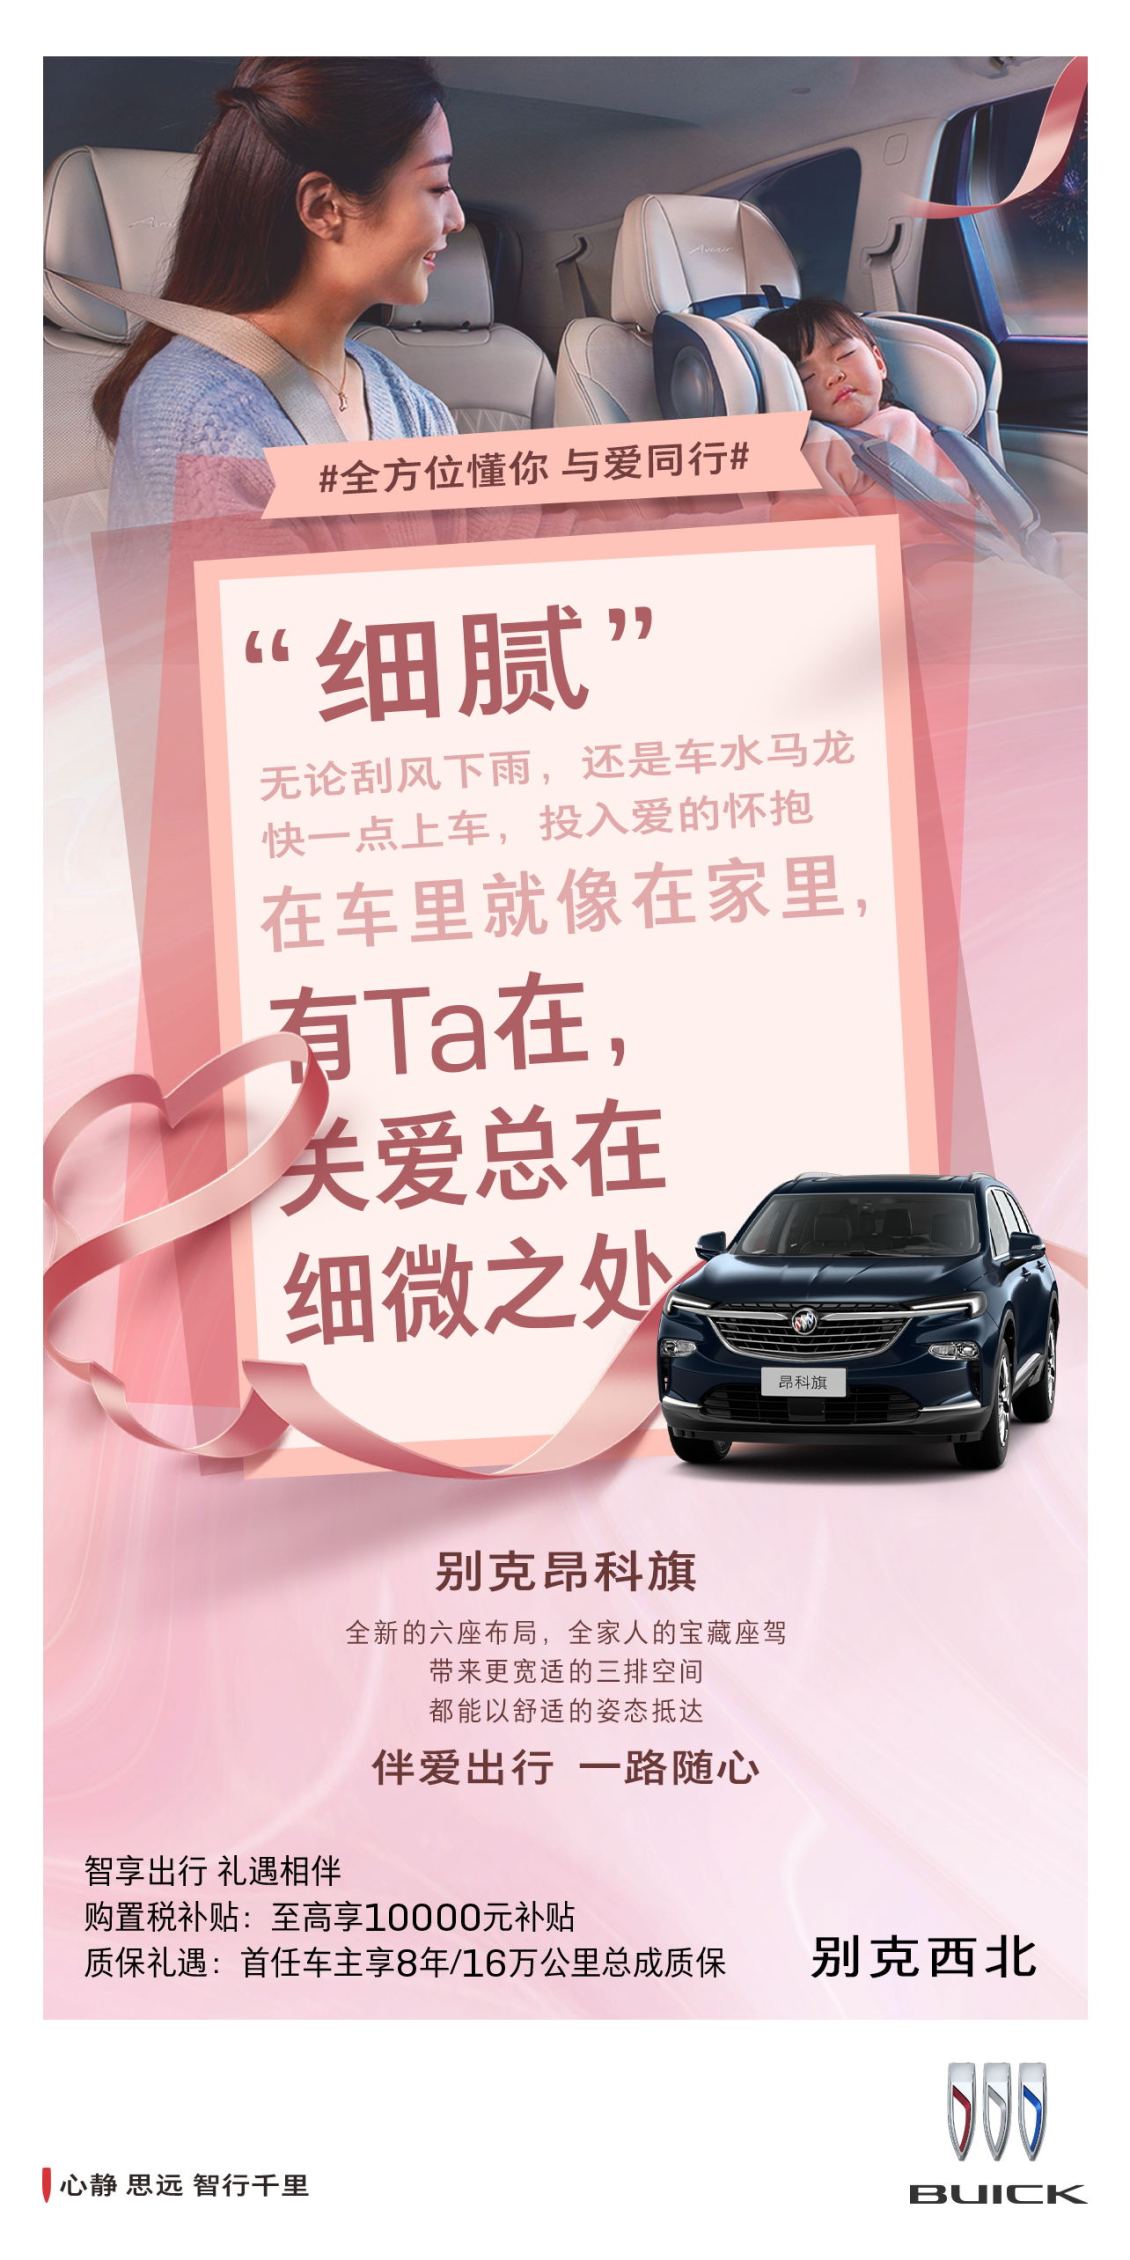 淘宝美工y256623汽车品牌宣传海报作品